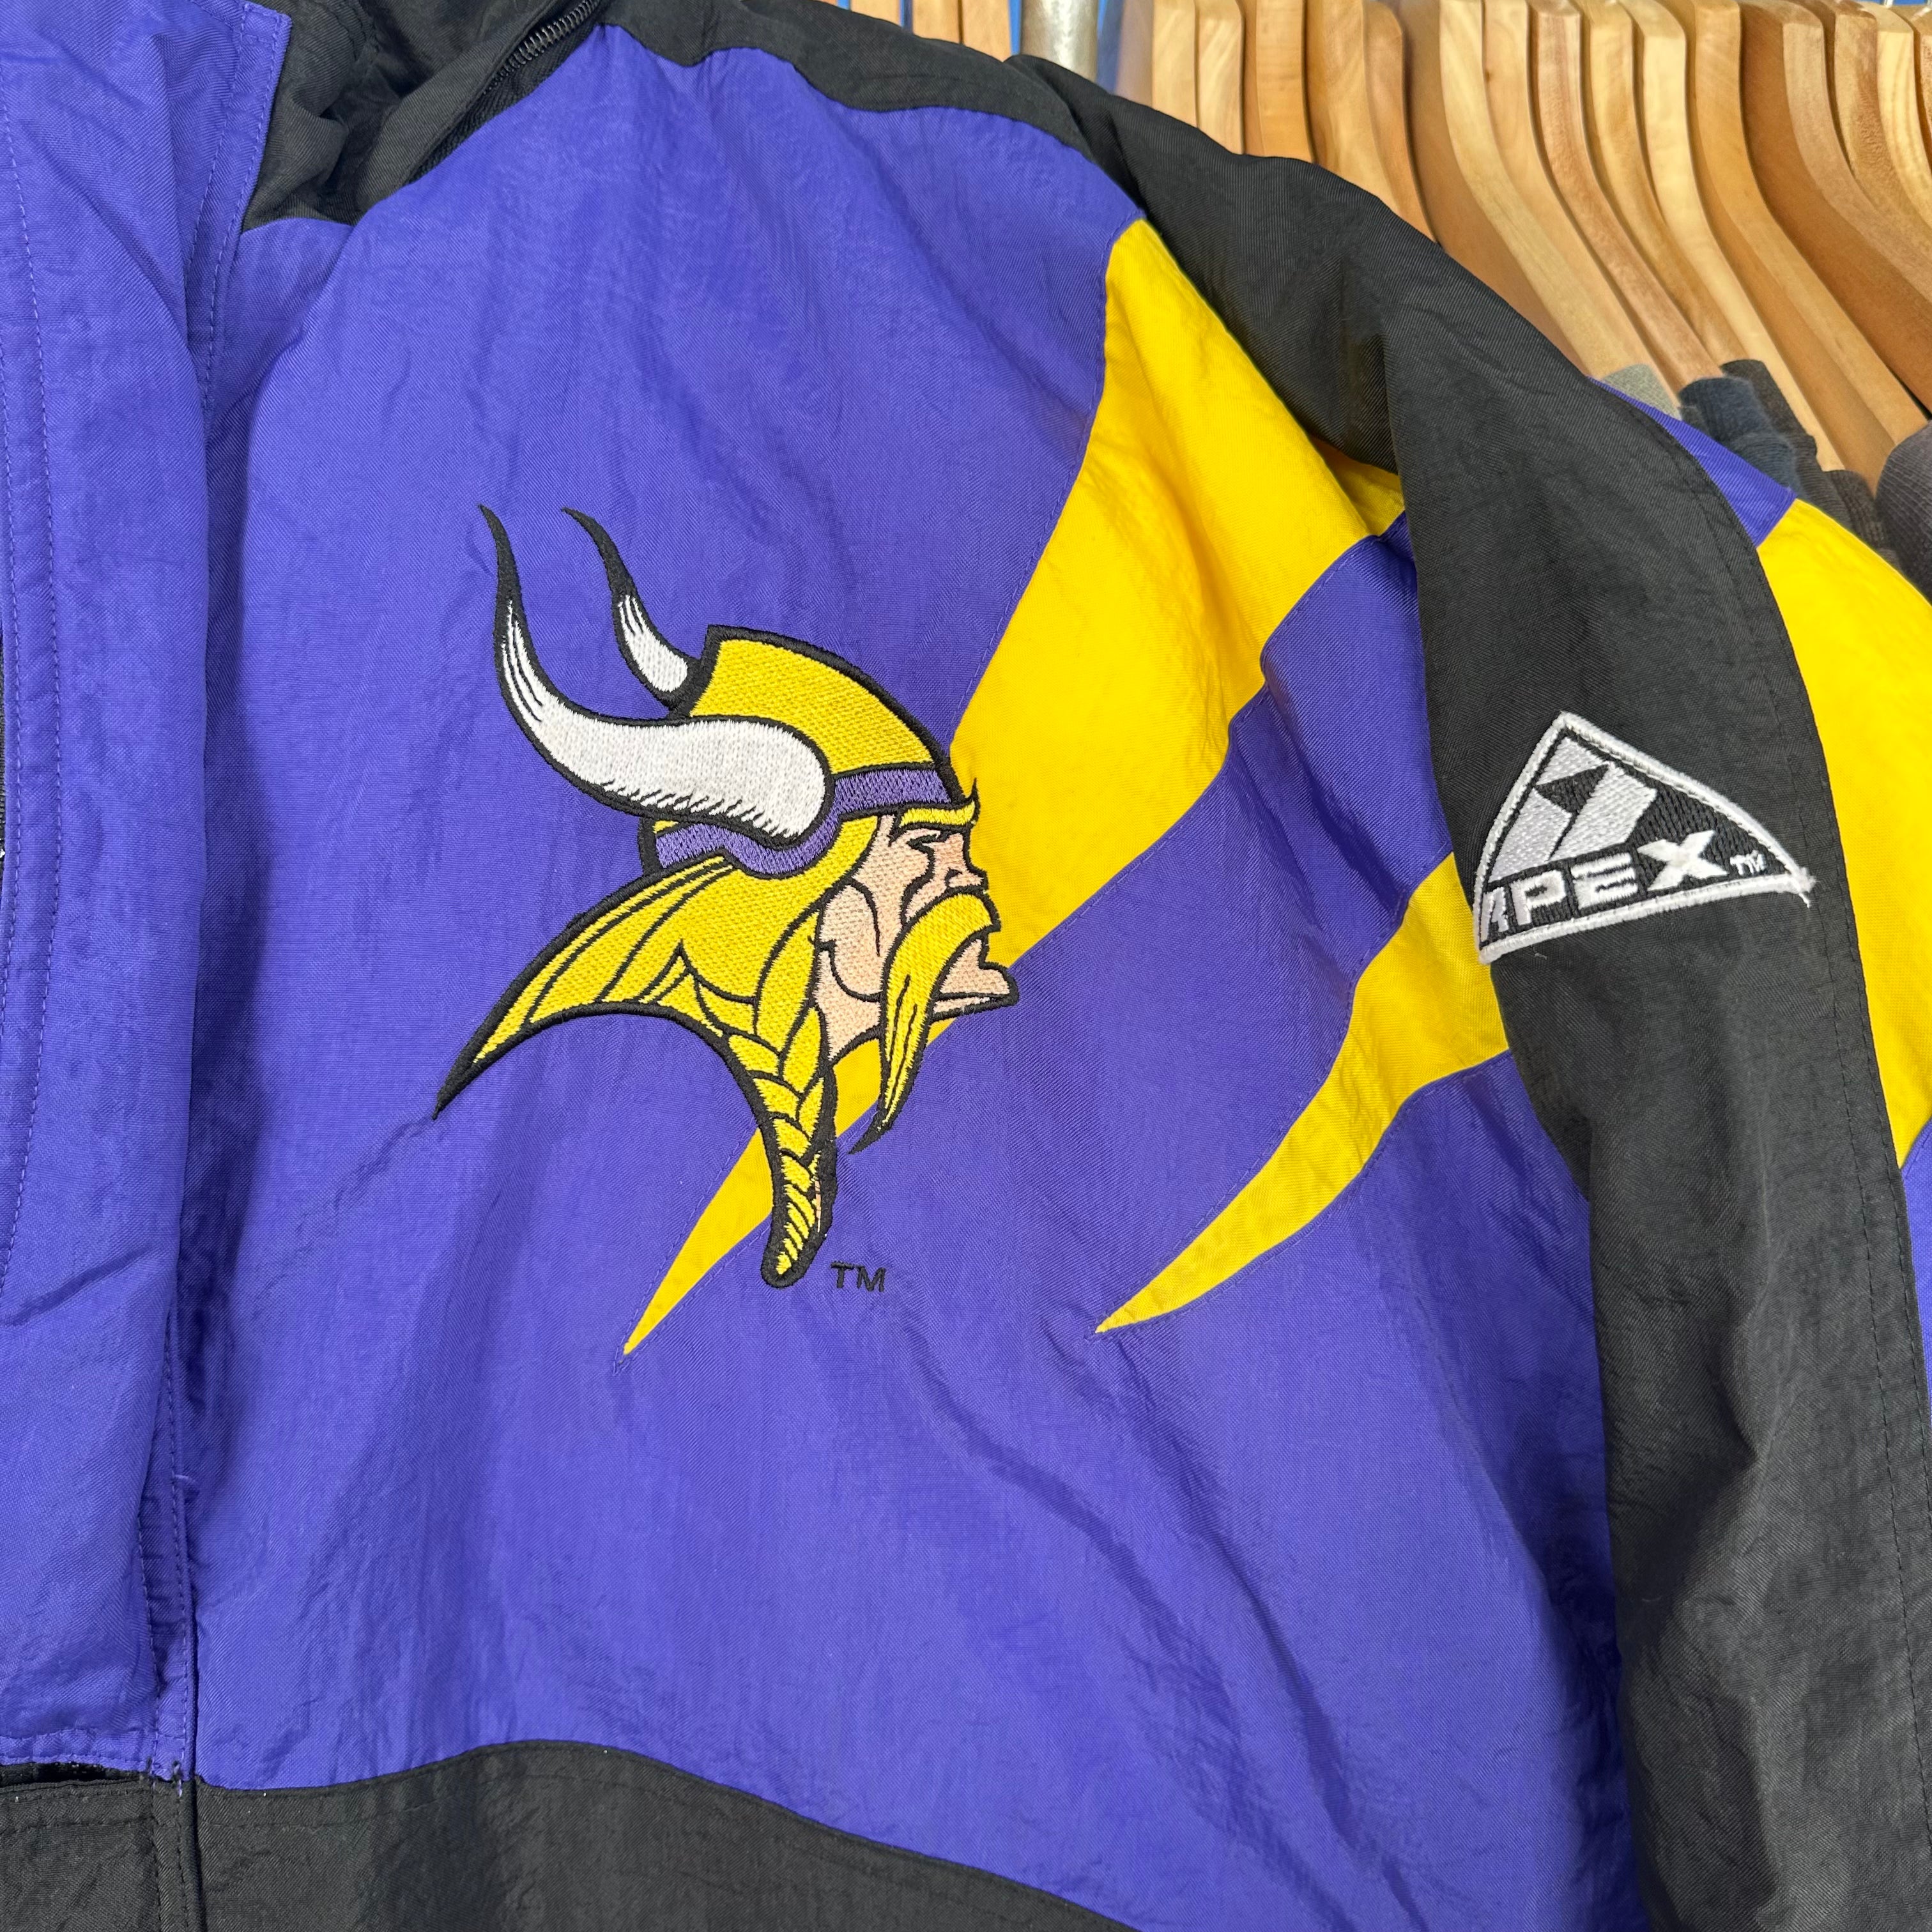 MN Vikings Apex Spike Jacket